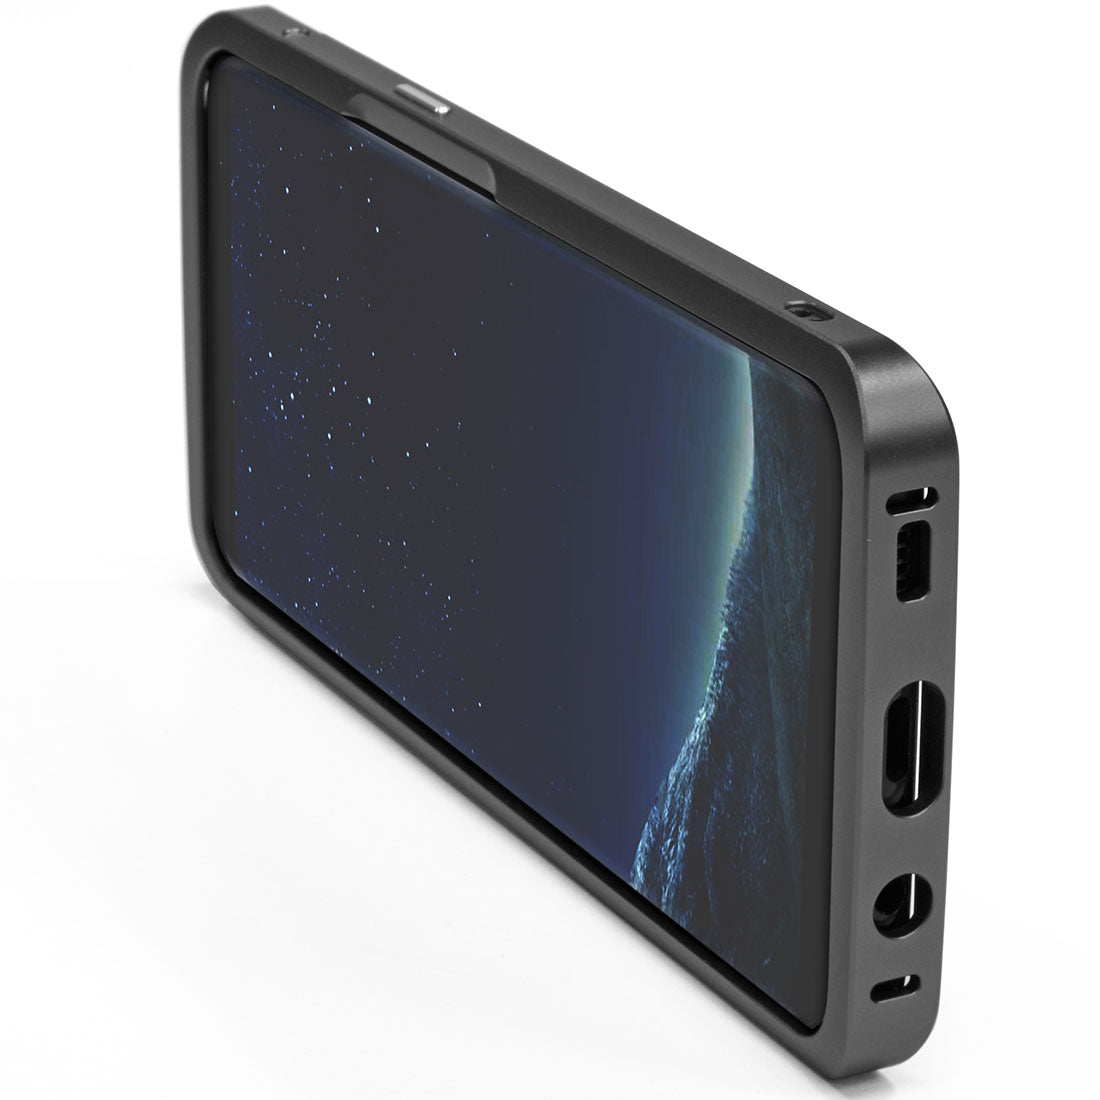 Galaxy S8+ aluminum bumper case